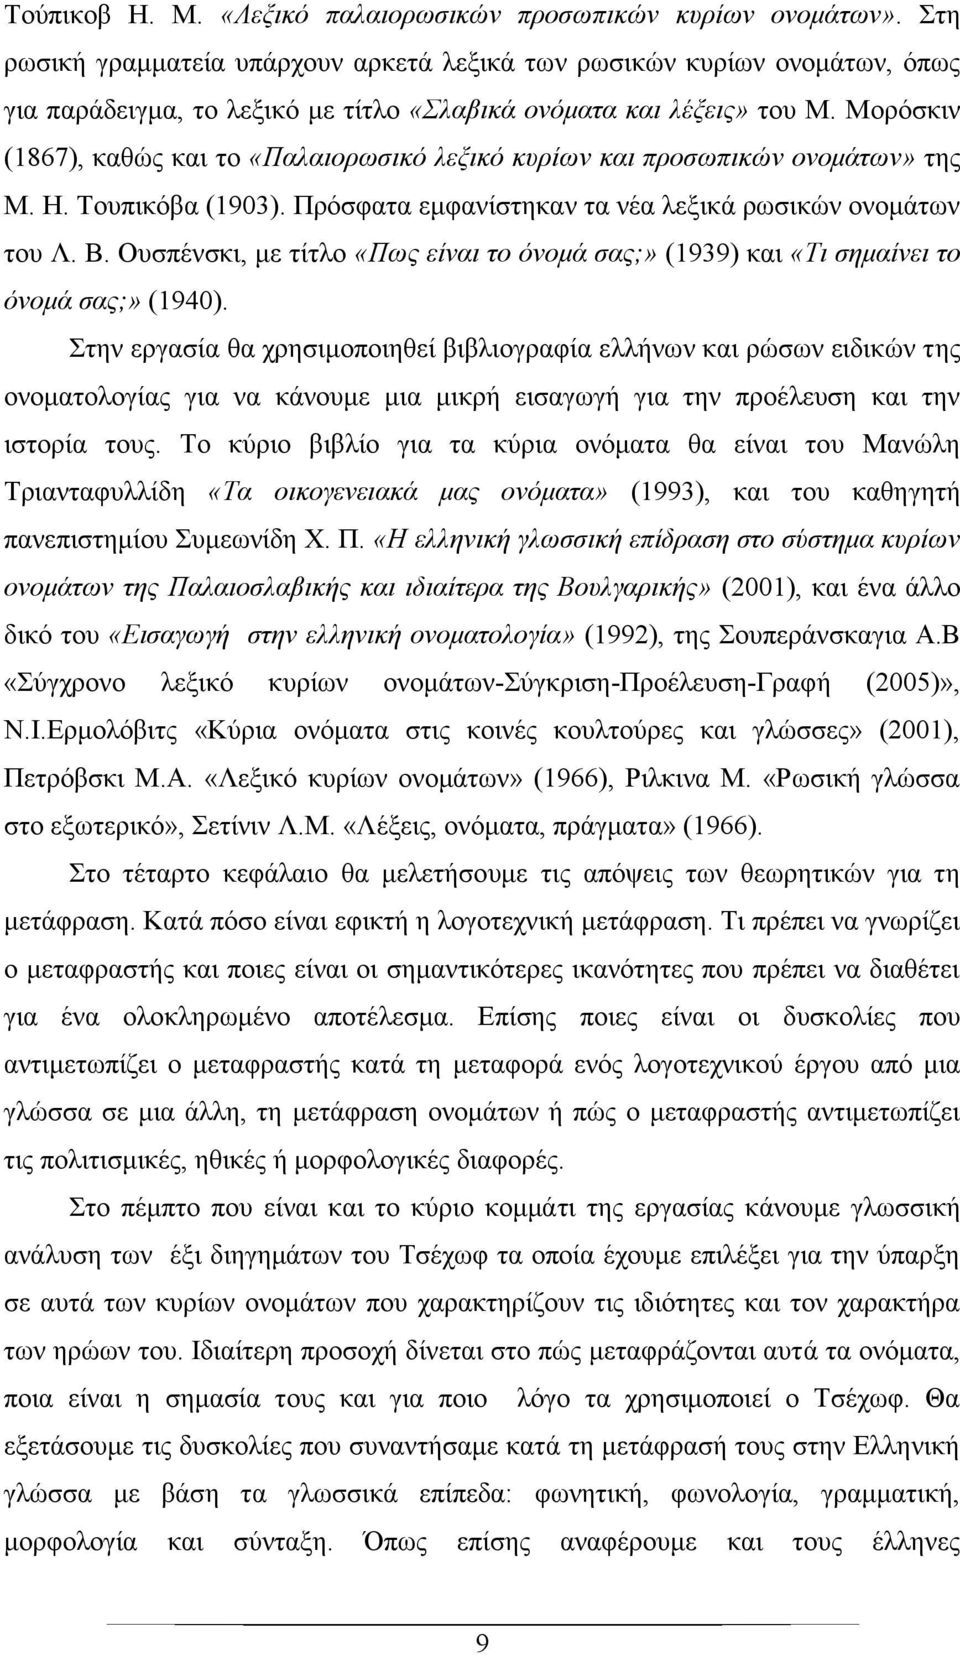 Μορόσκιν (1867), καθώς και το «Παλαιορωσικό λεξικό κυρίων και προσωπικών ονομάτων» της Μ. Η. Τουπικόβα (1903). Πρόσφατα εμφανίστηκαν τα νέα λεξικά ρωσικών ονομάτων του Λ. Β.